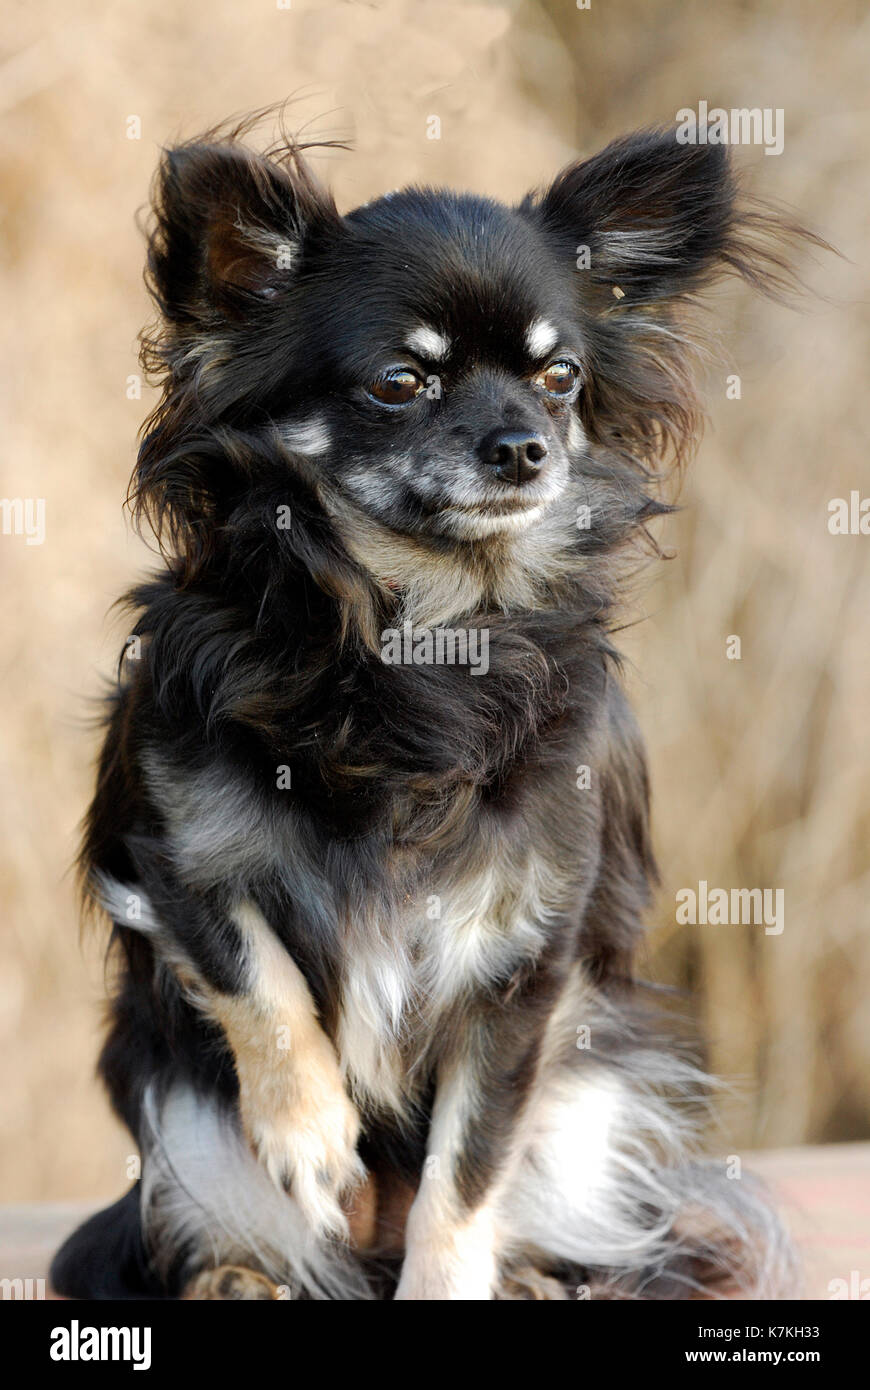 Lindo perrito, un chihuahua de pelo largo, negro, marrón y caramelo pelaje largo Foto de stock